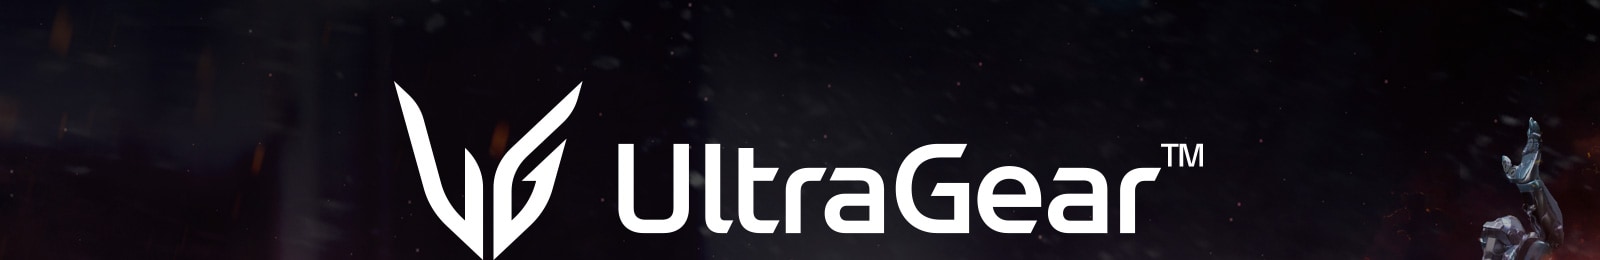 Màn hình chơi game UltraGear™